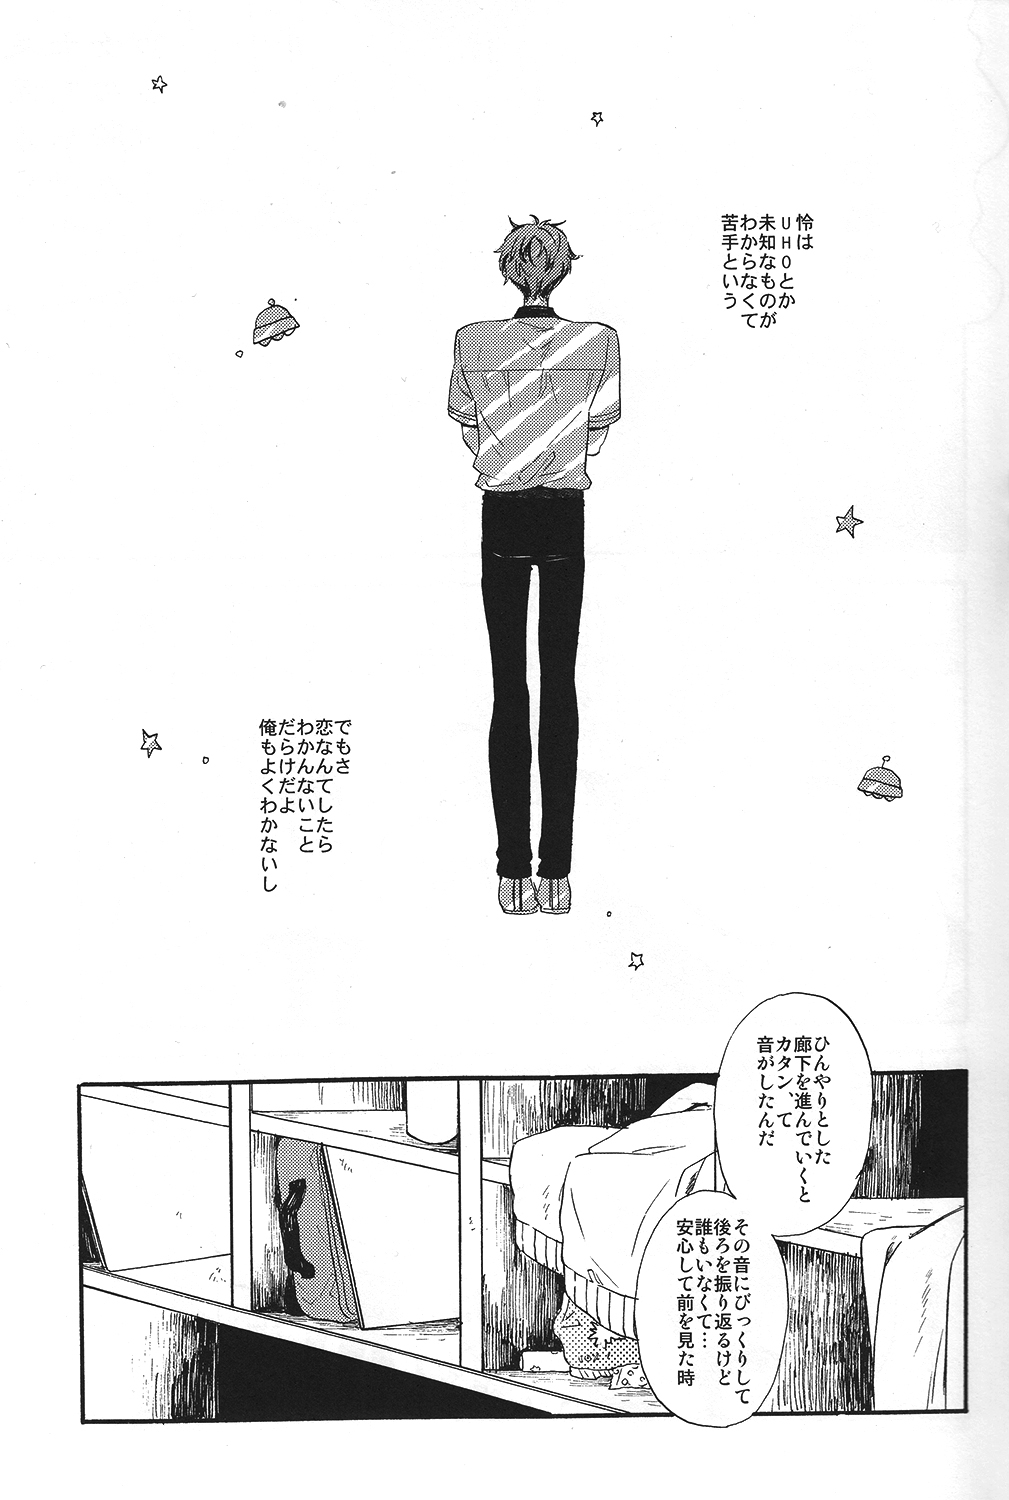 (SUPER23) [Ciao, baby (Miike Romuko)] Kowagari Mash Up! (Free!) page 4 full